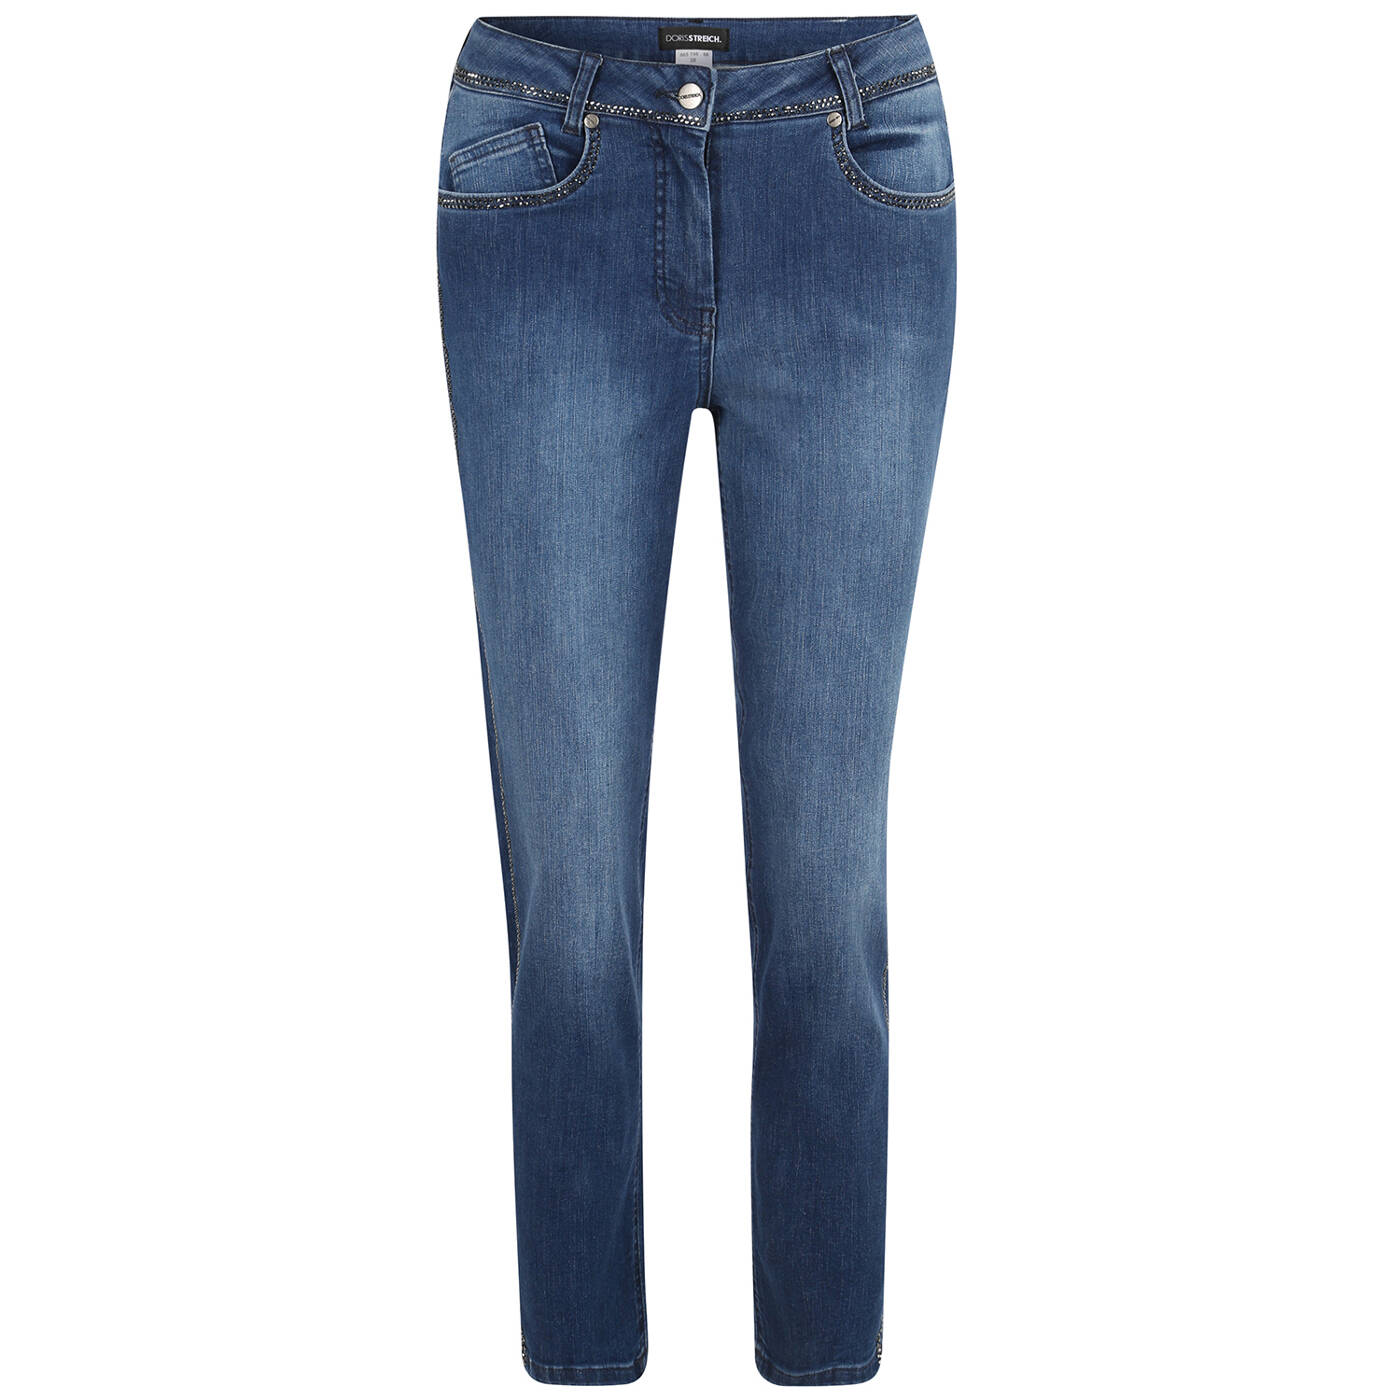 Jeans von Doris Streich - online bestellen bei